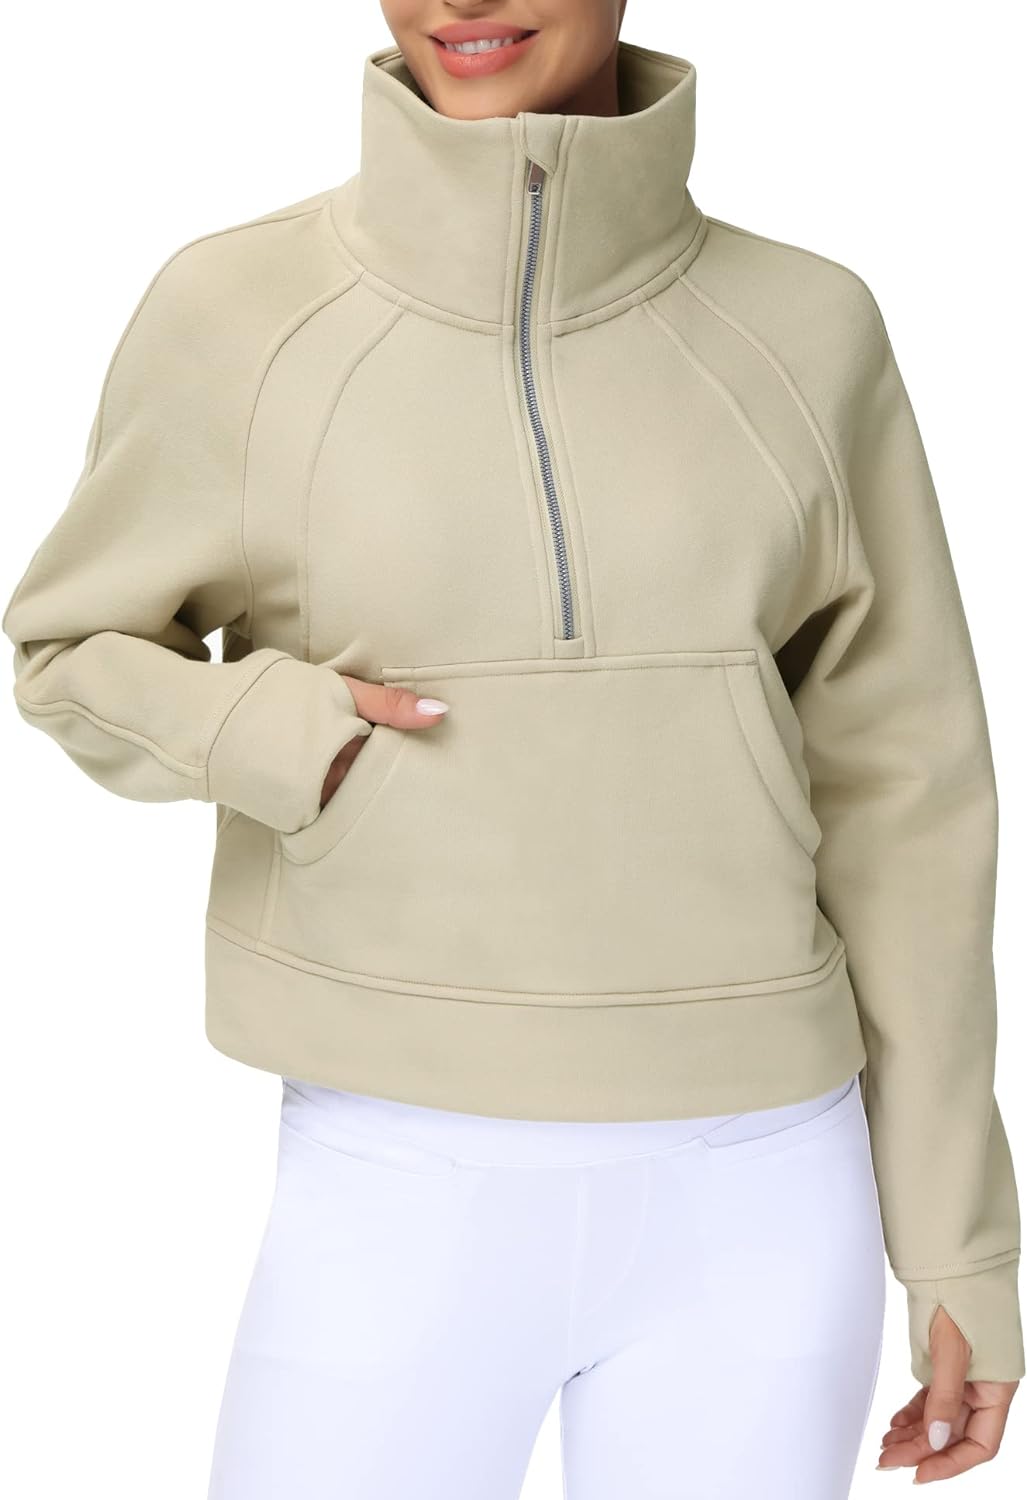 THE GYM PEOPLE Womens' Half Zip Pullover Fleece Stand Collar Crop  Sweatshirt wit